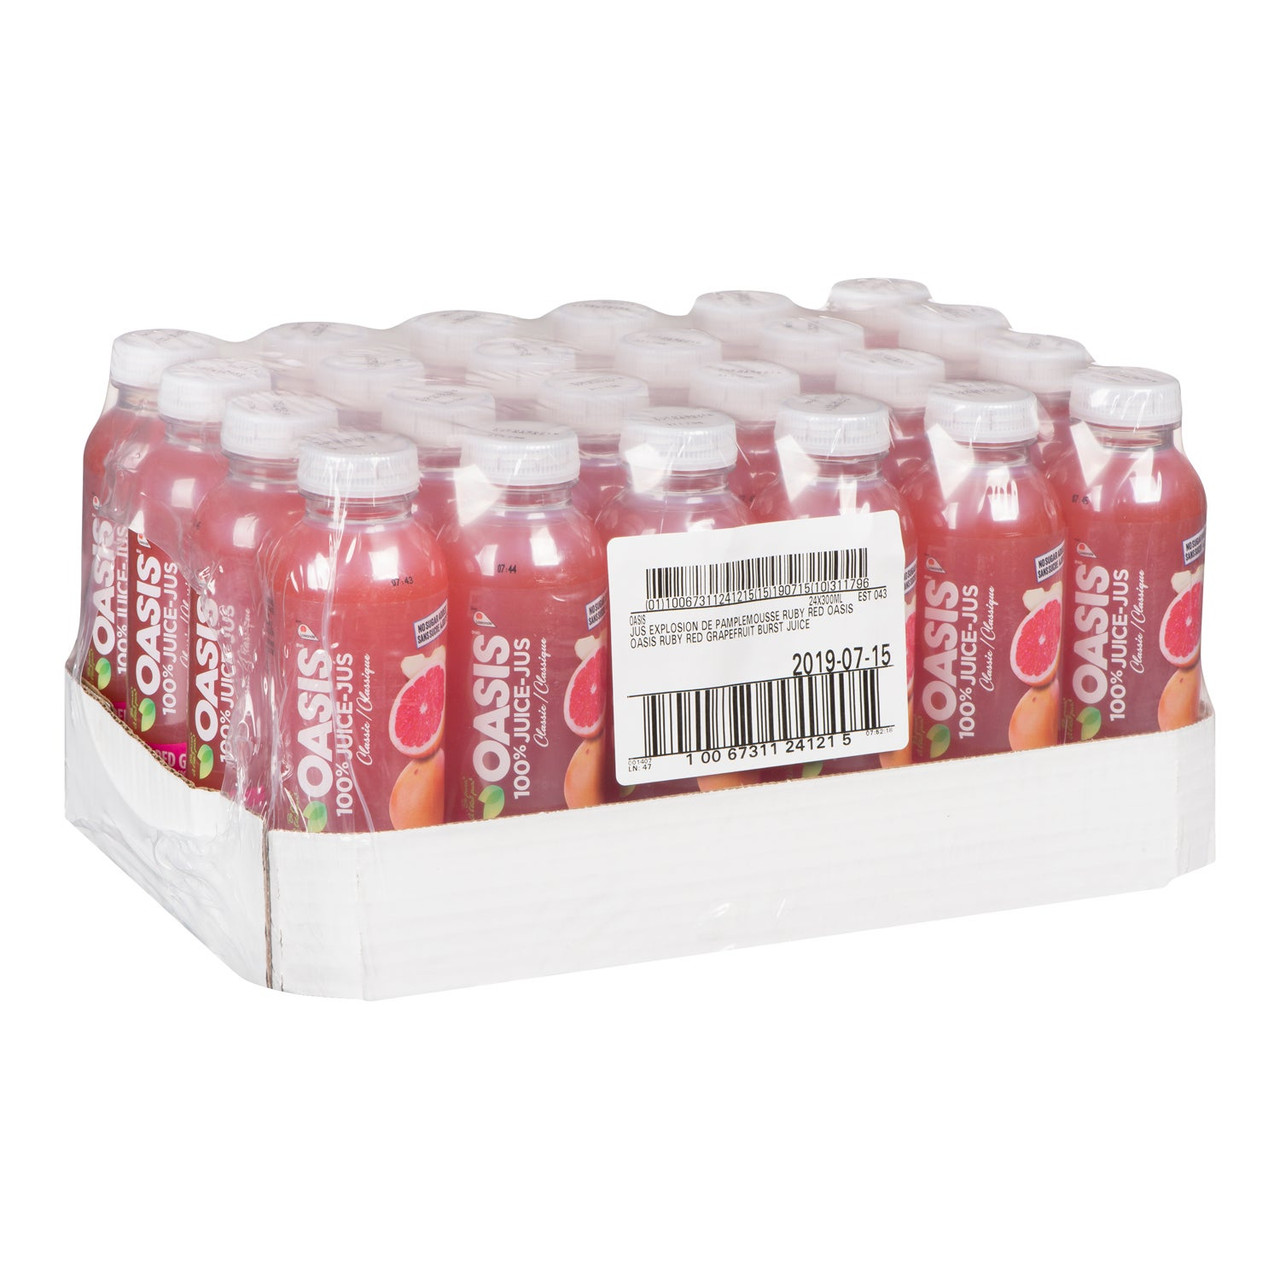 Oasis Ruby Red Grapefruit Juice, 100 Percent, Pet | 300ML/Unit, 24 Units/Case